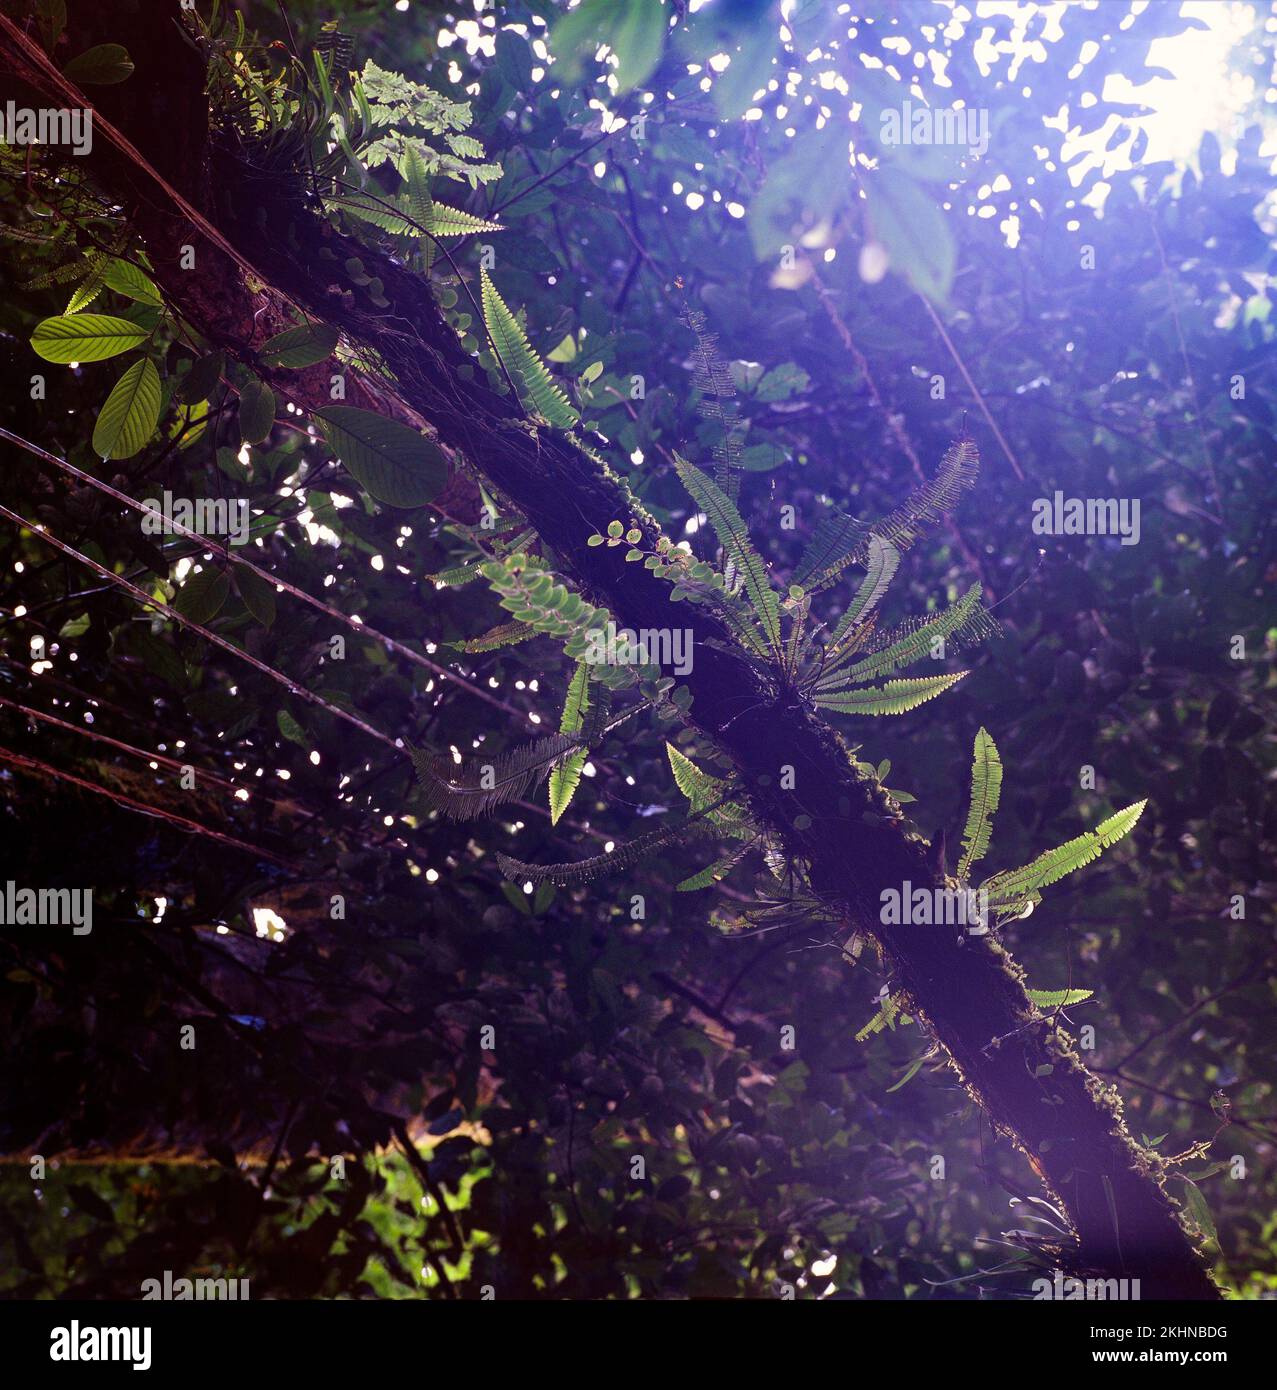 La jungle fermente sur une branche, Sarawak, Bornéo, Malaisie orientale Banque D'Images